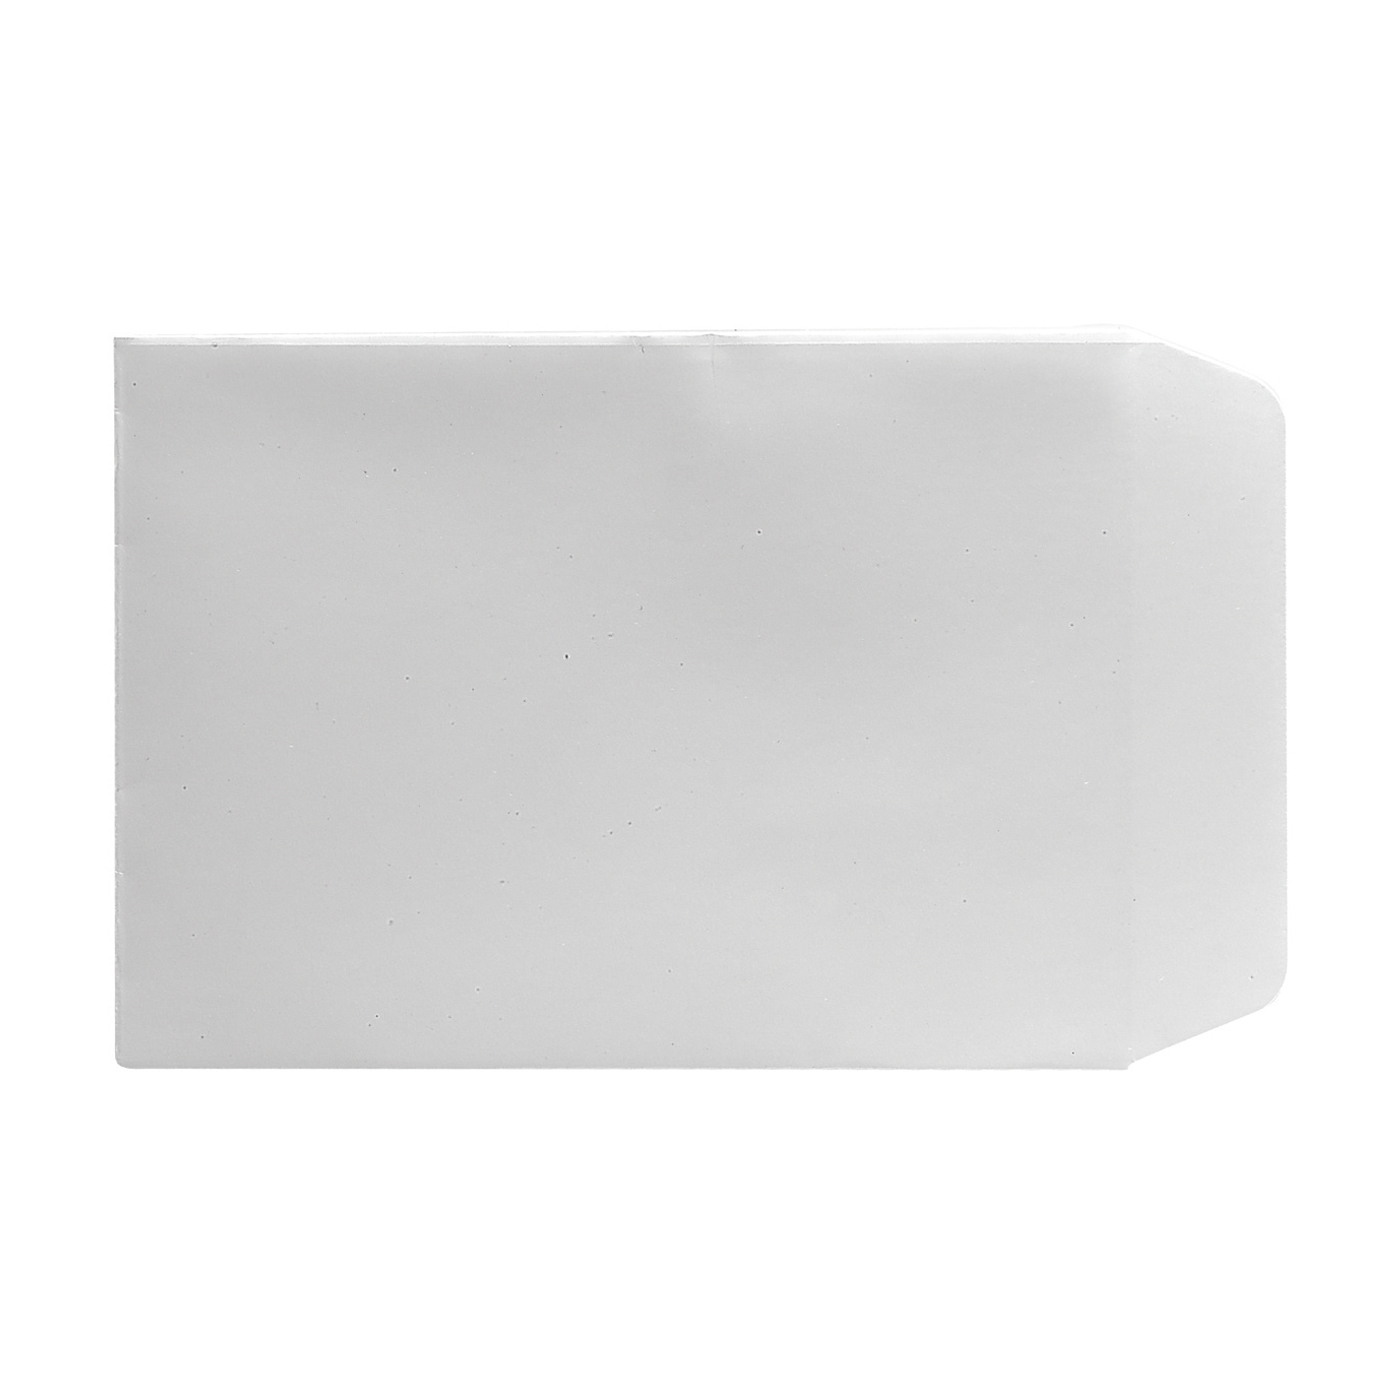 Papierbeutel, weiß, 78 x 113 mm - 10 Stück